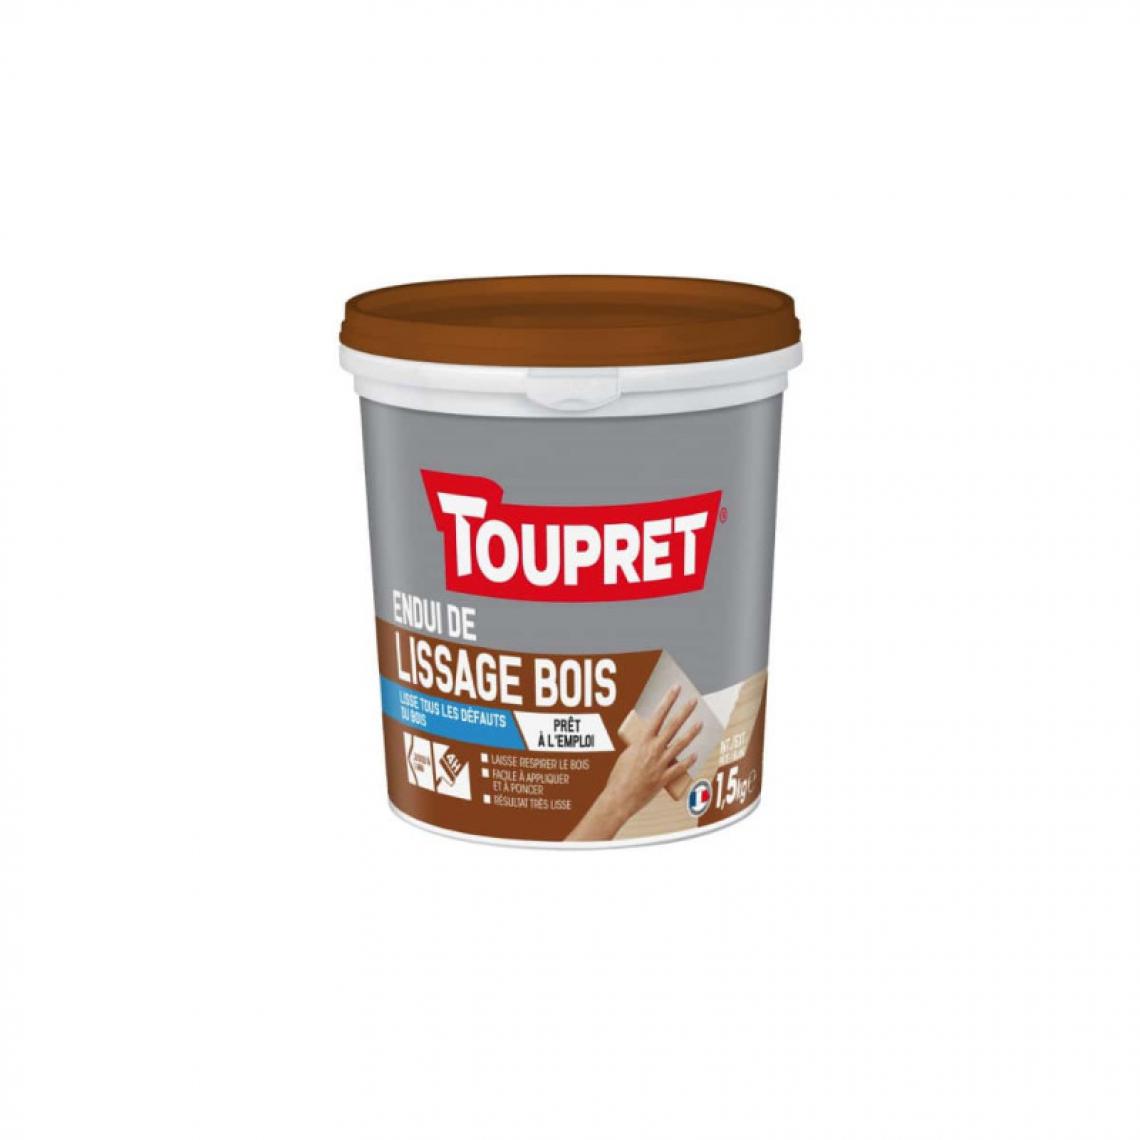 Toupret - Enduit de lissage TOUPRET bois - 1,5Kg - 7115CD0911 - Mastic, silicone, joint